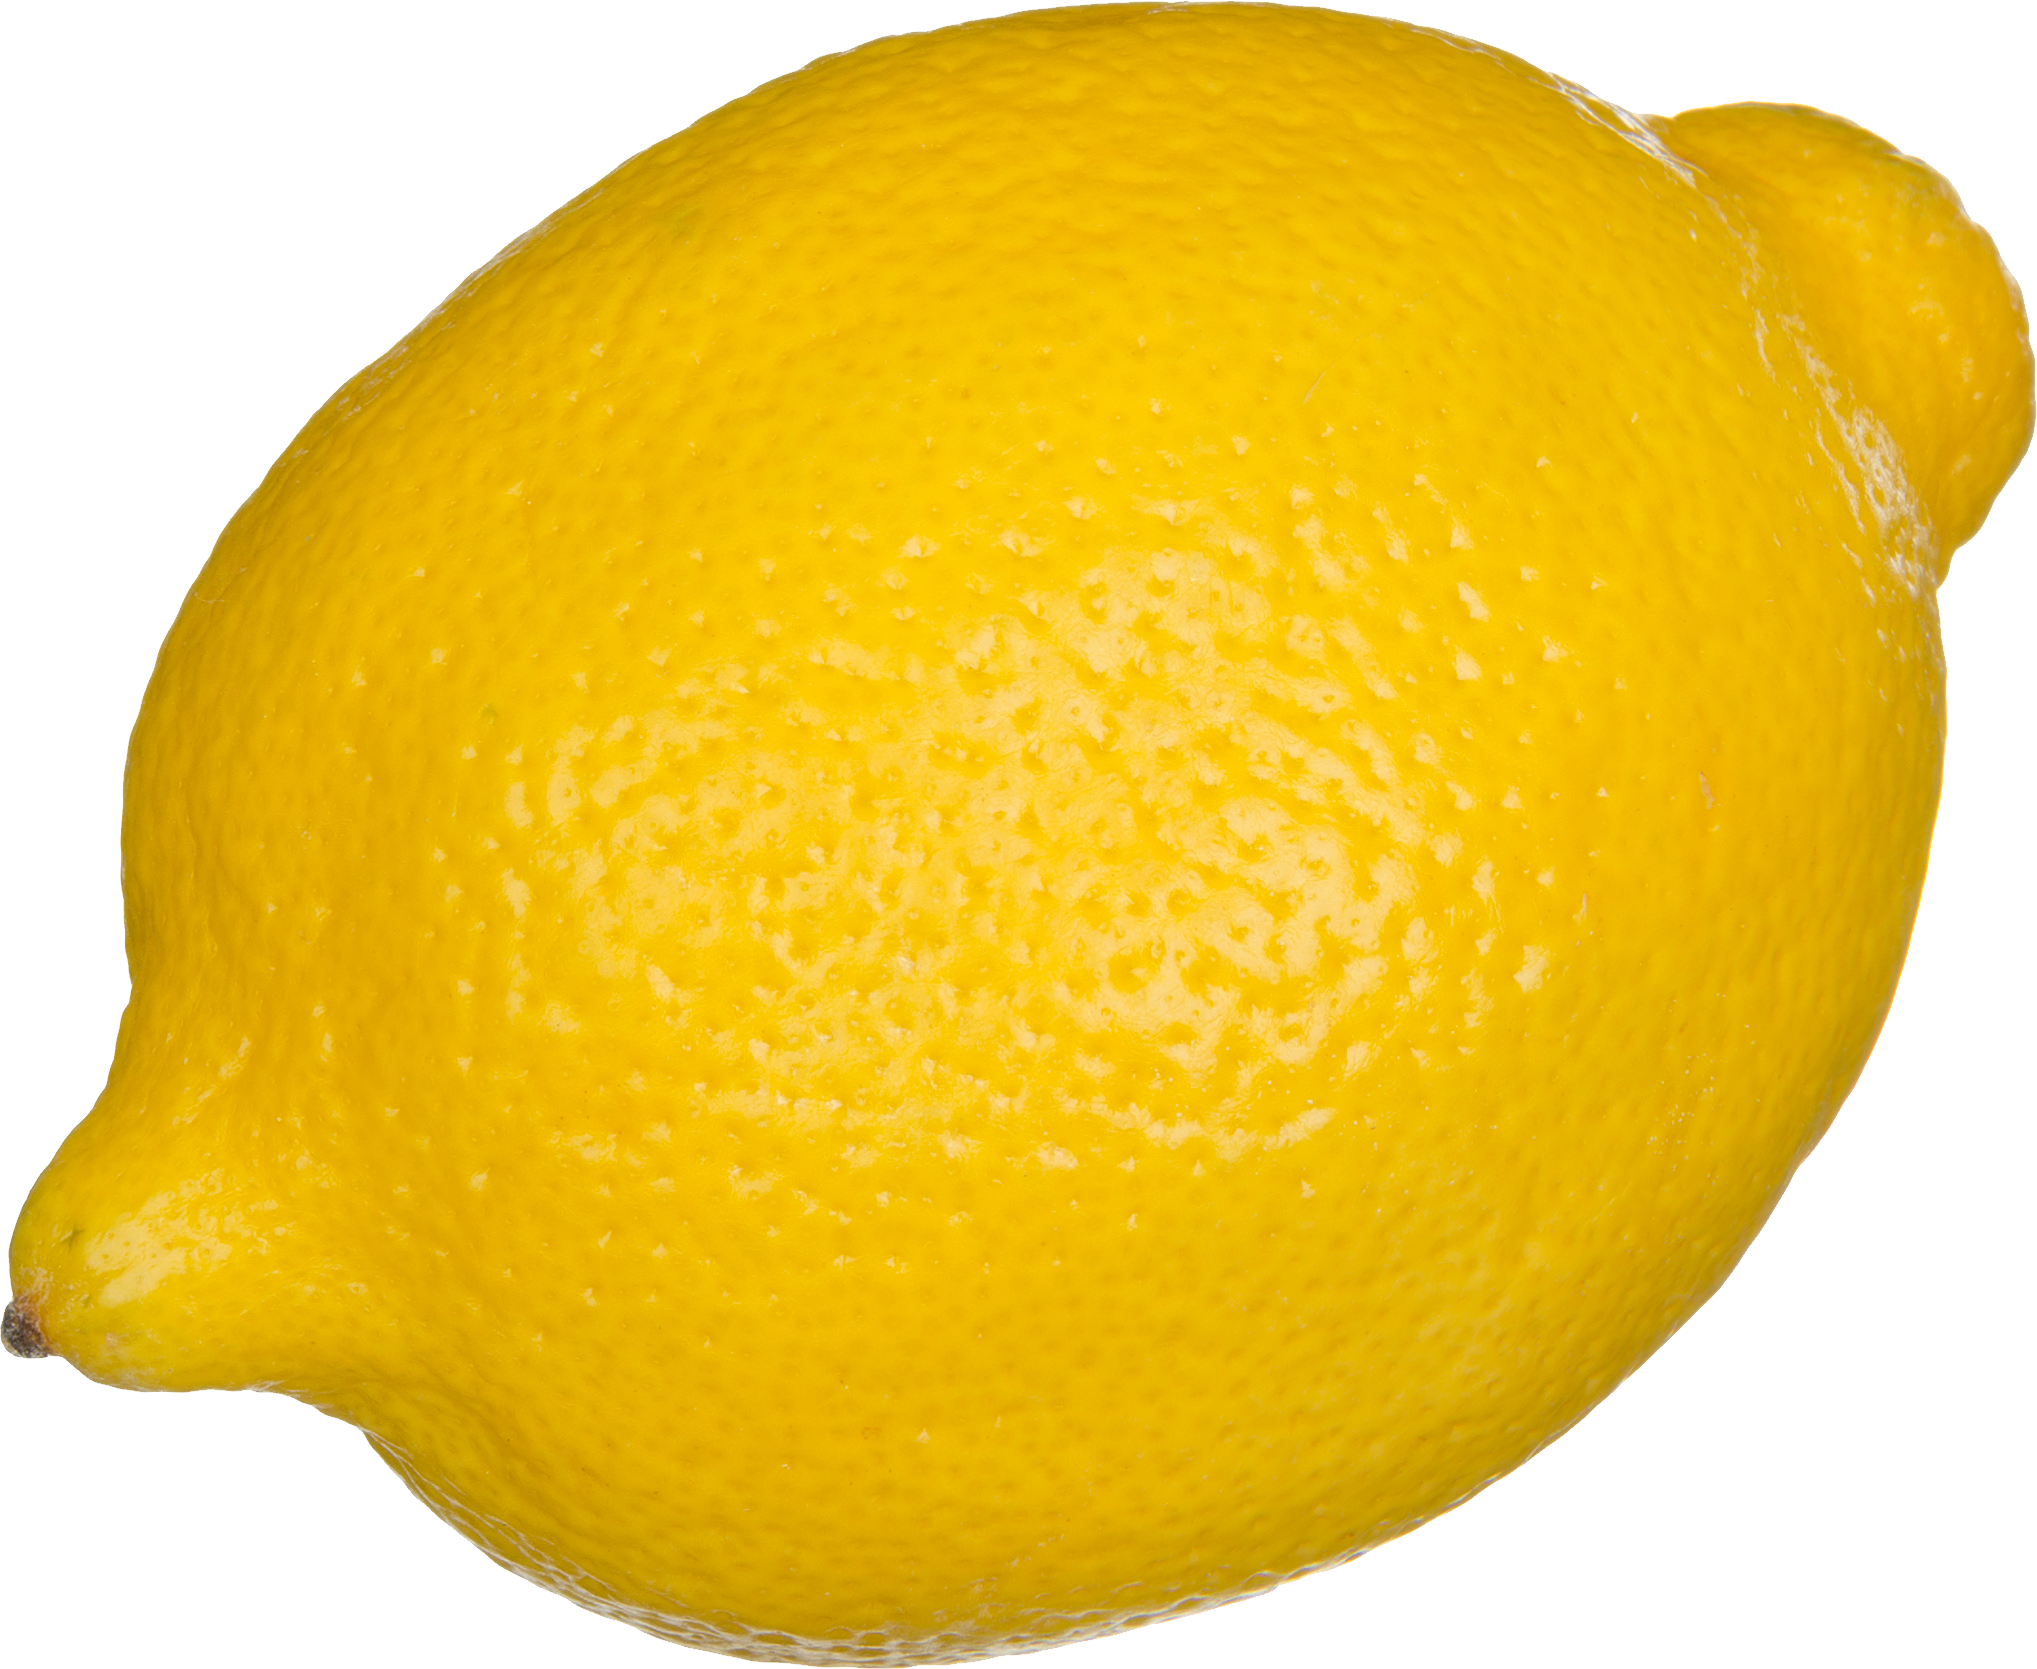 Lemon png image purepng. Juice clipart citrus